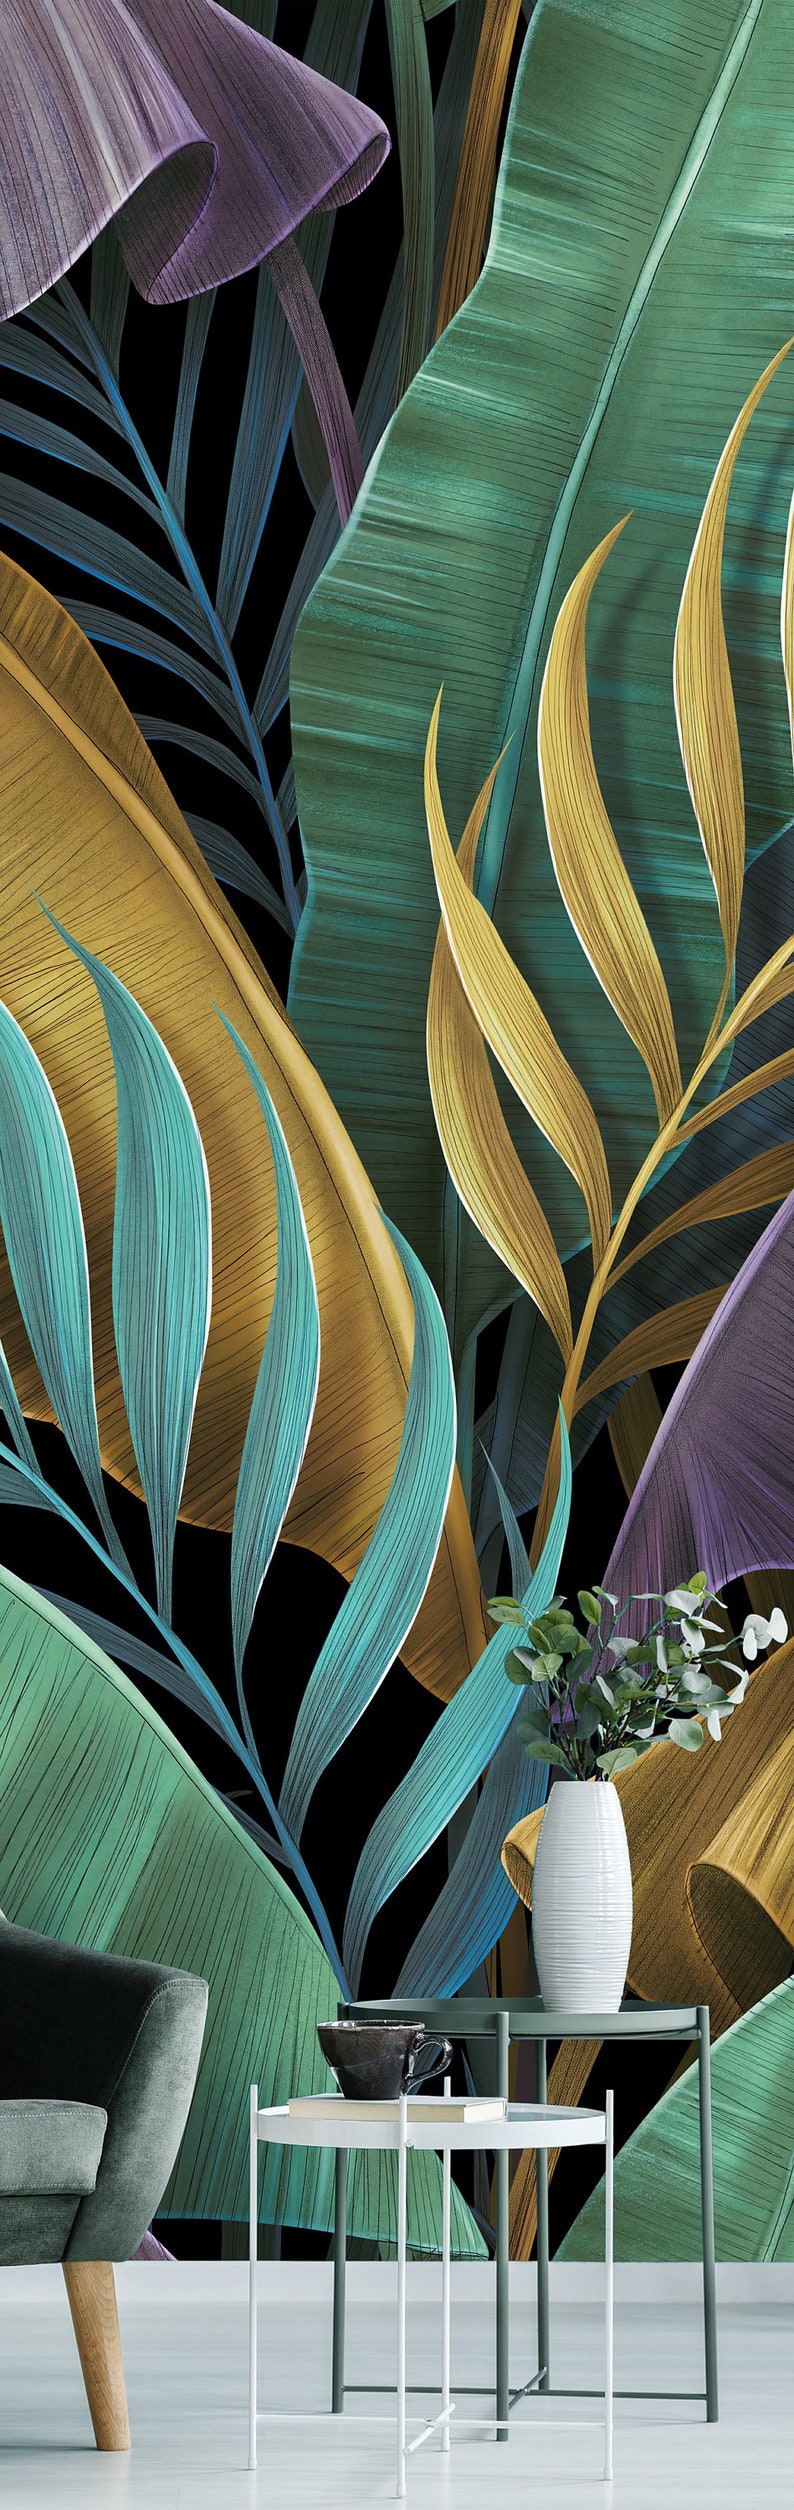 Tropisch exotisch behang, pastelkleurige bananenbladeren, palm, schil en plakmuurschildering, zelfklevend, tropisch wanddecor afbeelding 5